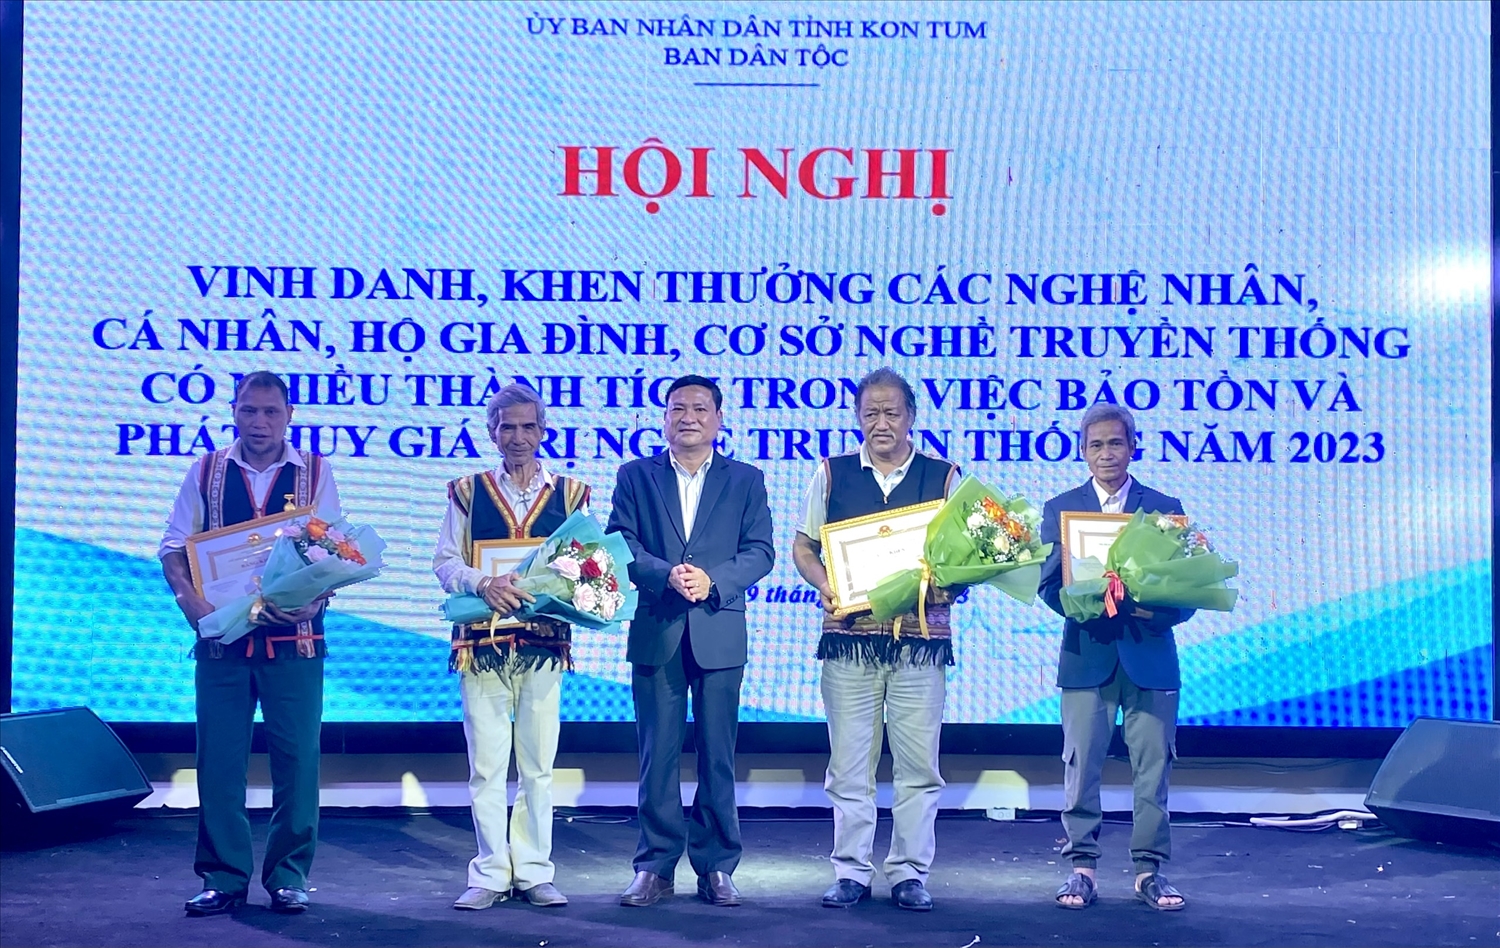 Ban Dân tộc tỉnh Kon Tum vinh danh, khen thưởng các nghệ nhân, cá nhân có nhiều thành tích trong bảo tồn và phát huy giá trị nghề truyền thống